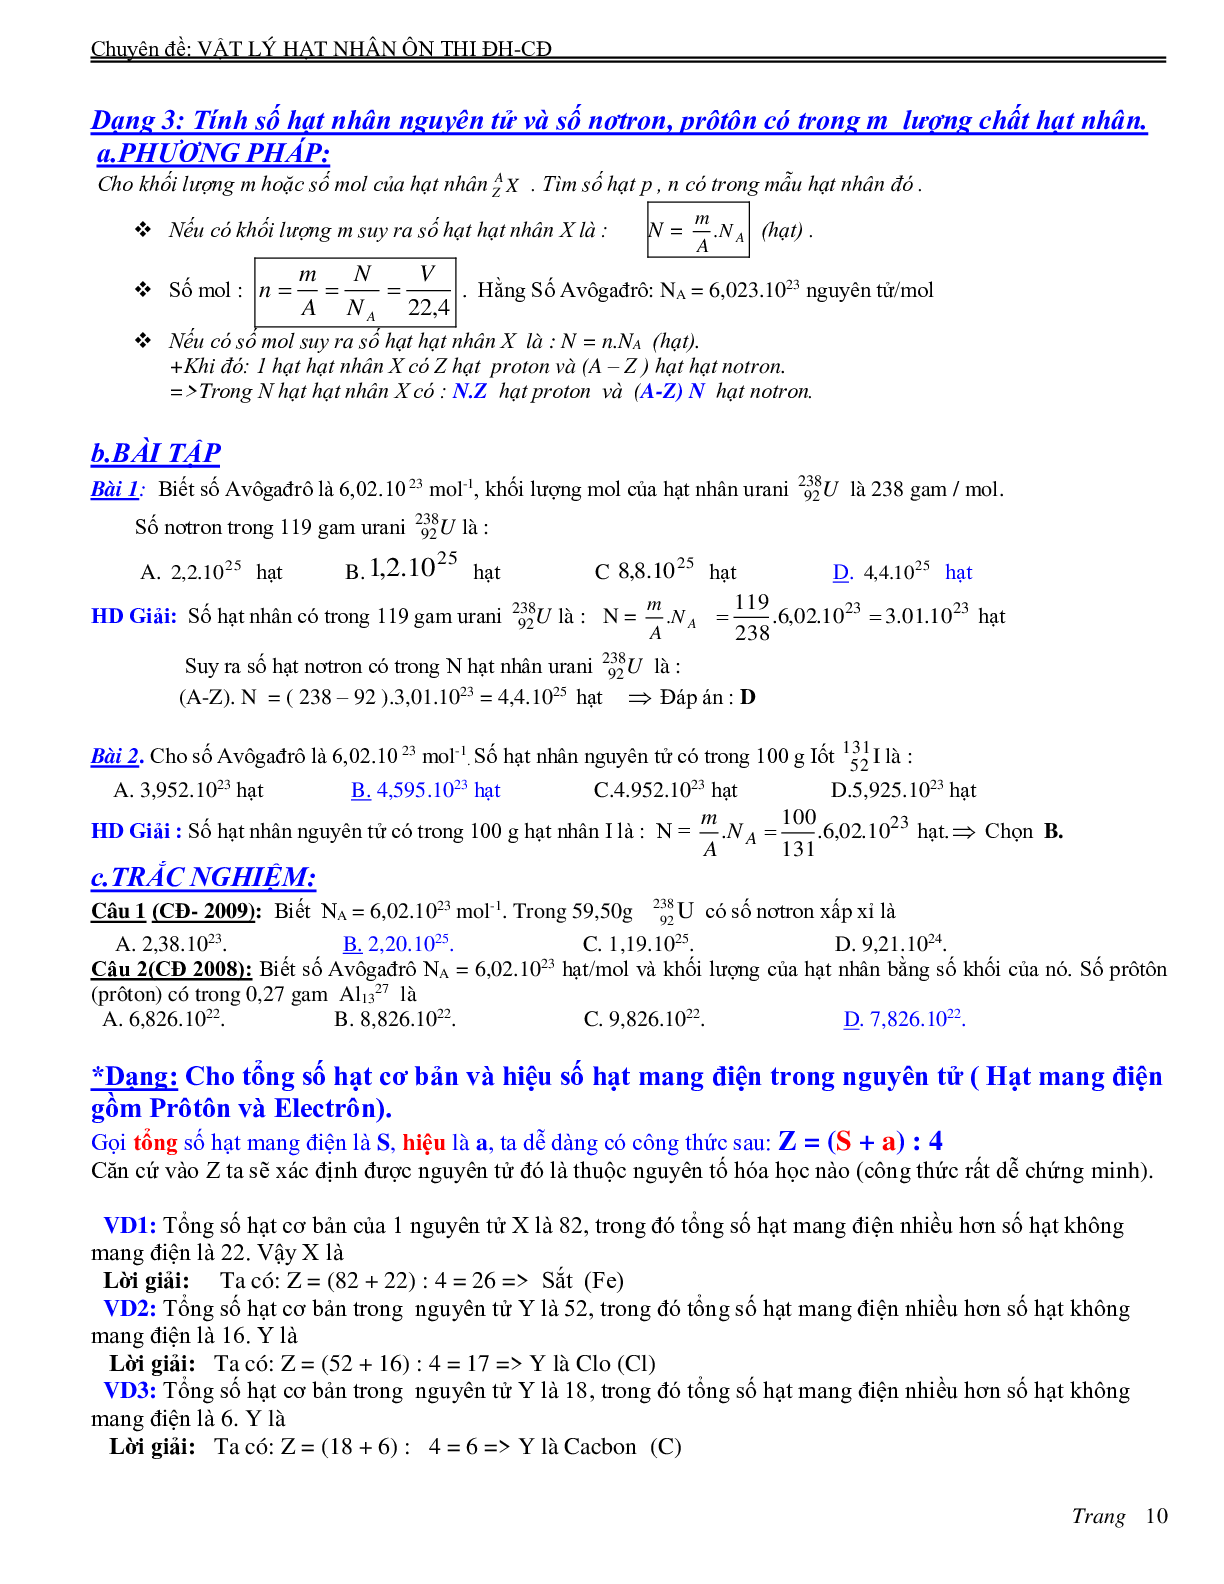 Chuyên đề Hạt nhân nguyên tử môn Vật lý lớp 12 (trang 10)